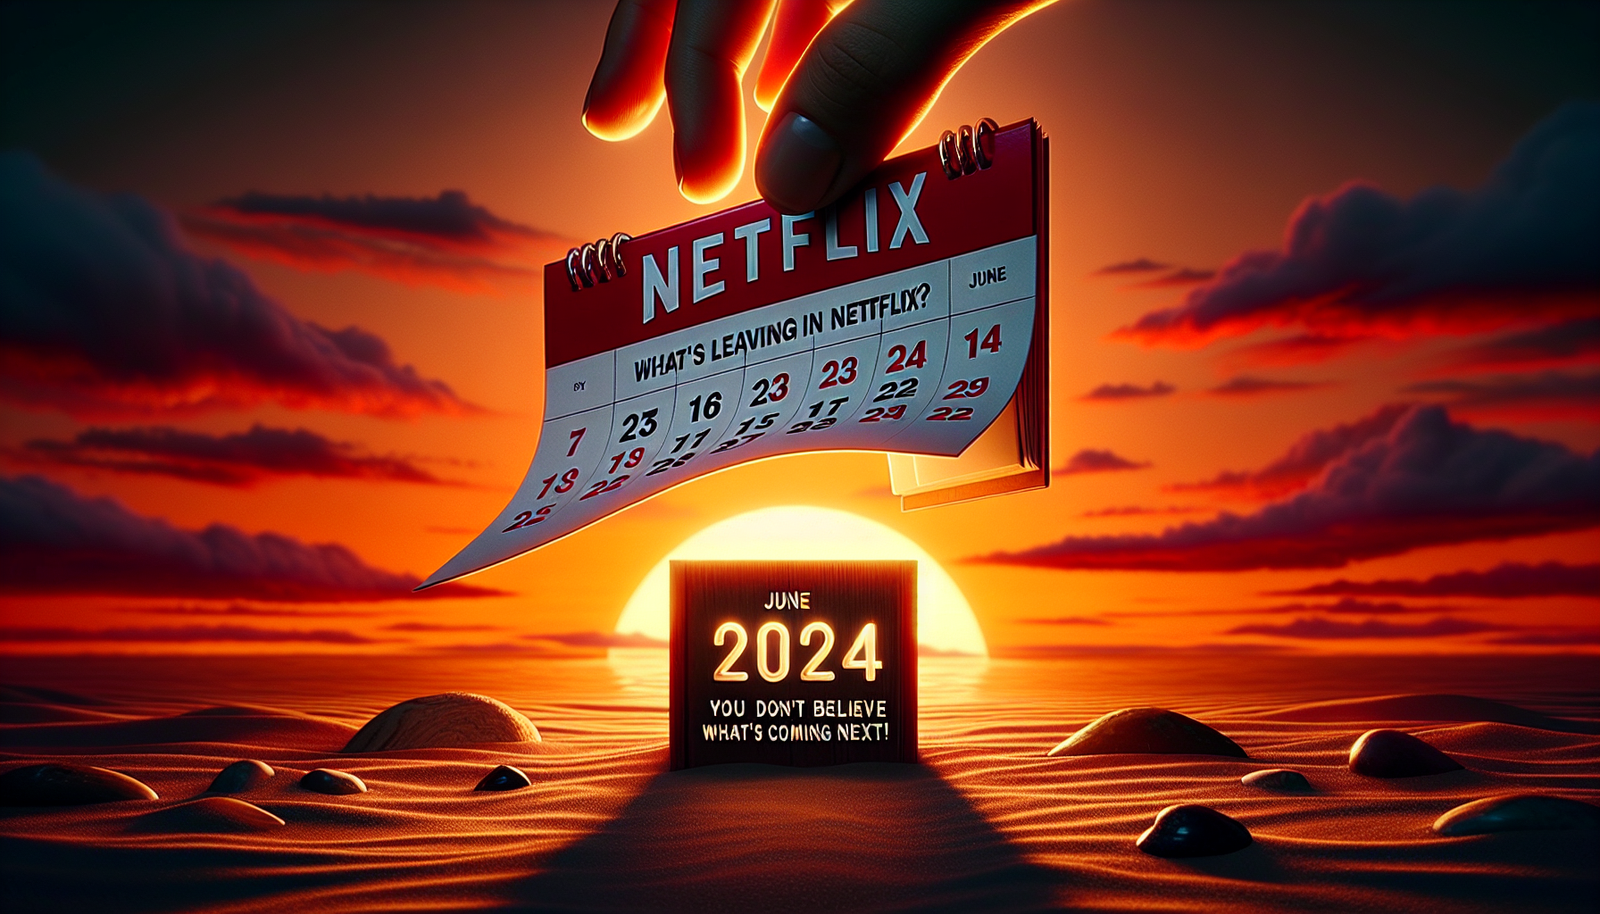 découvrez ce qui sortira de Netflix en juin 2024 et préparez-vous à être surpris par ce qui va suivre ! ne manquez pas les changements passionnants à venir !